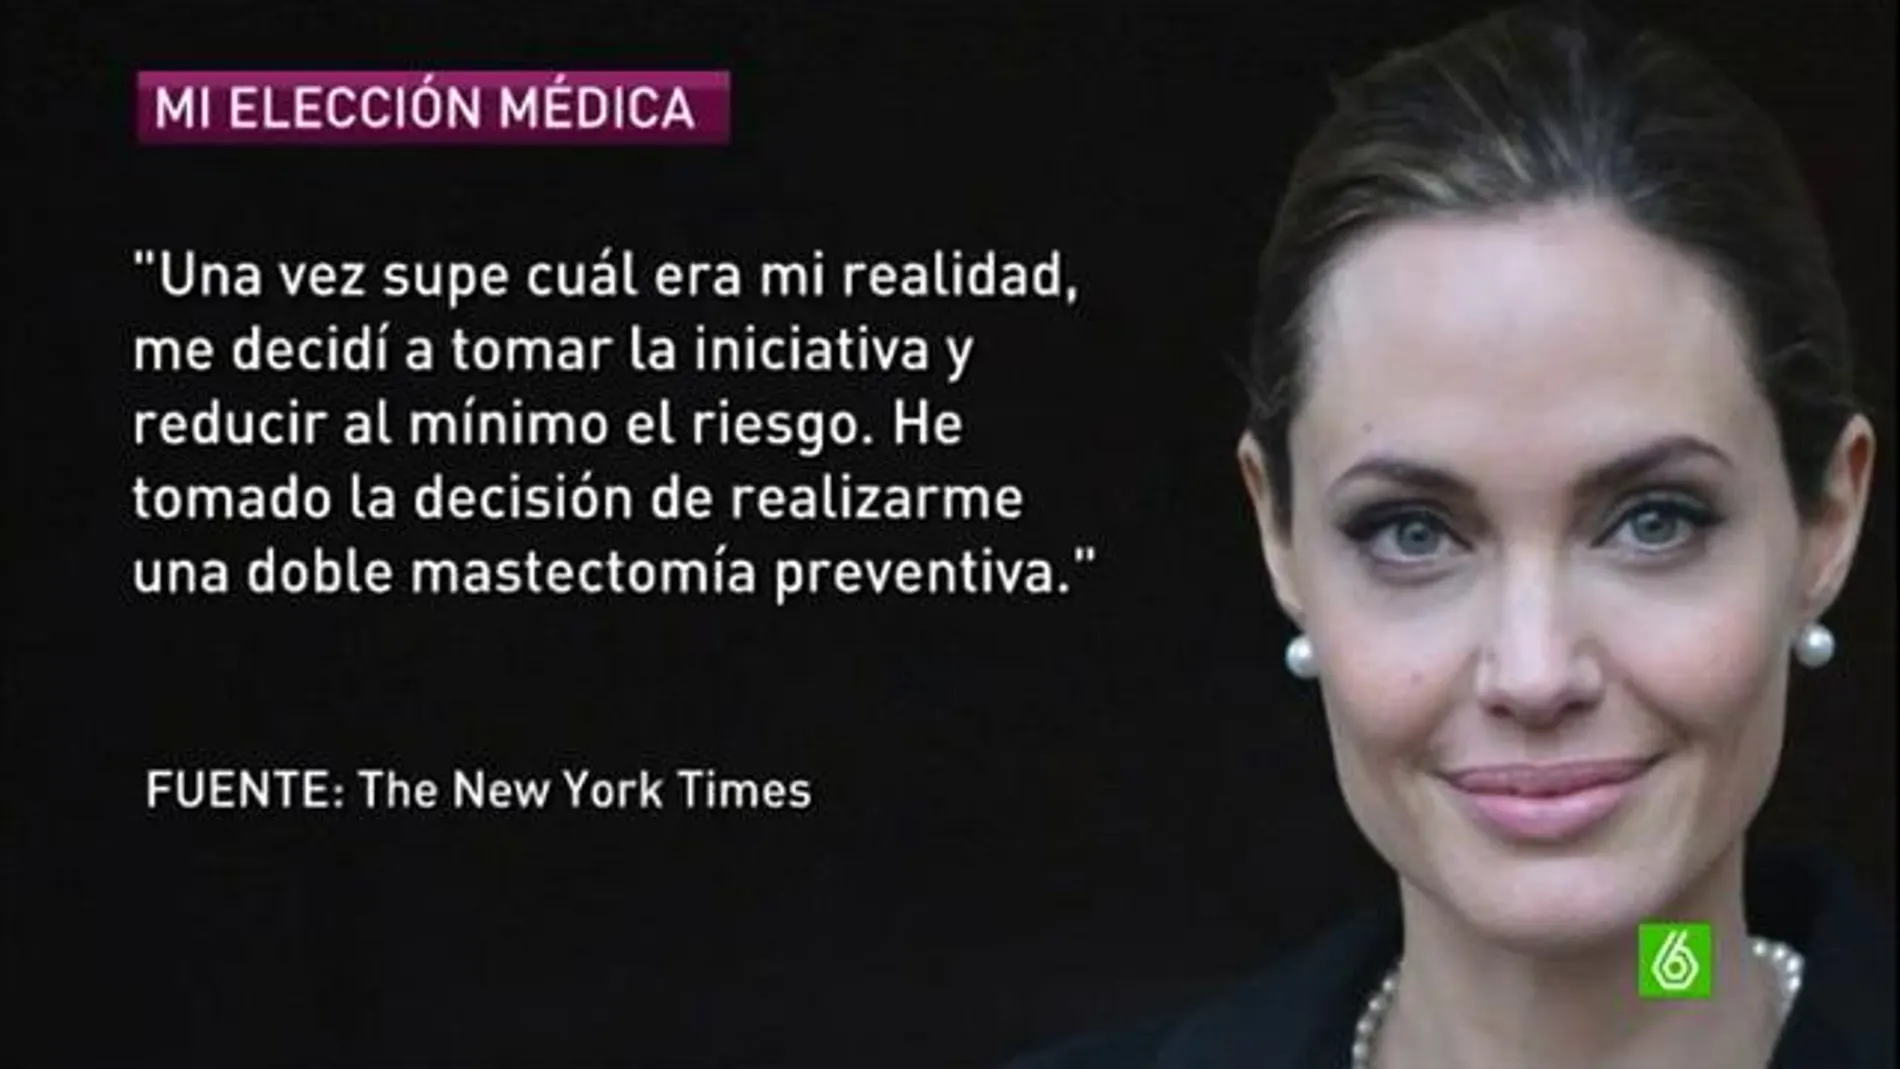 La elección médica de Angelina Jolie